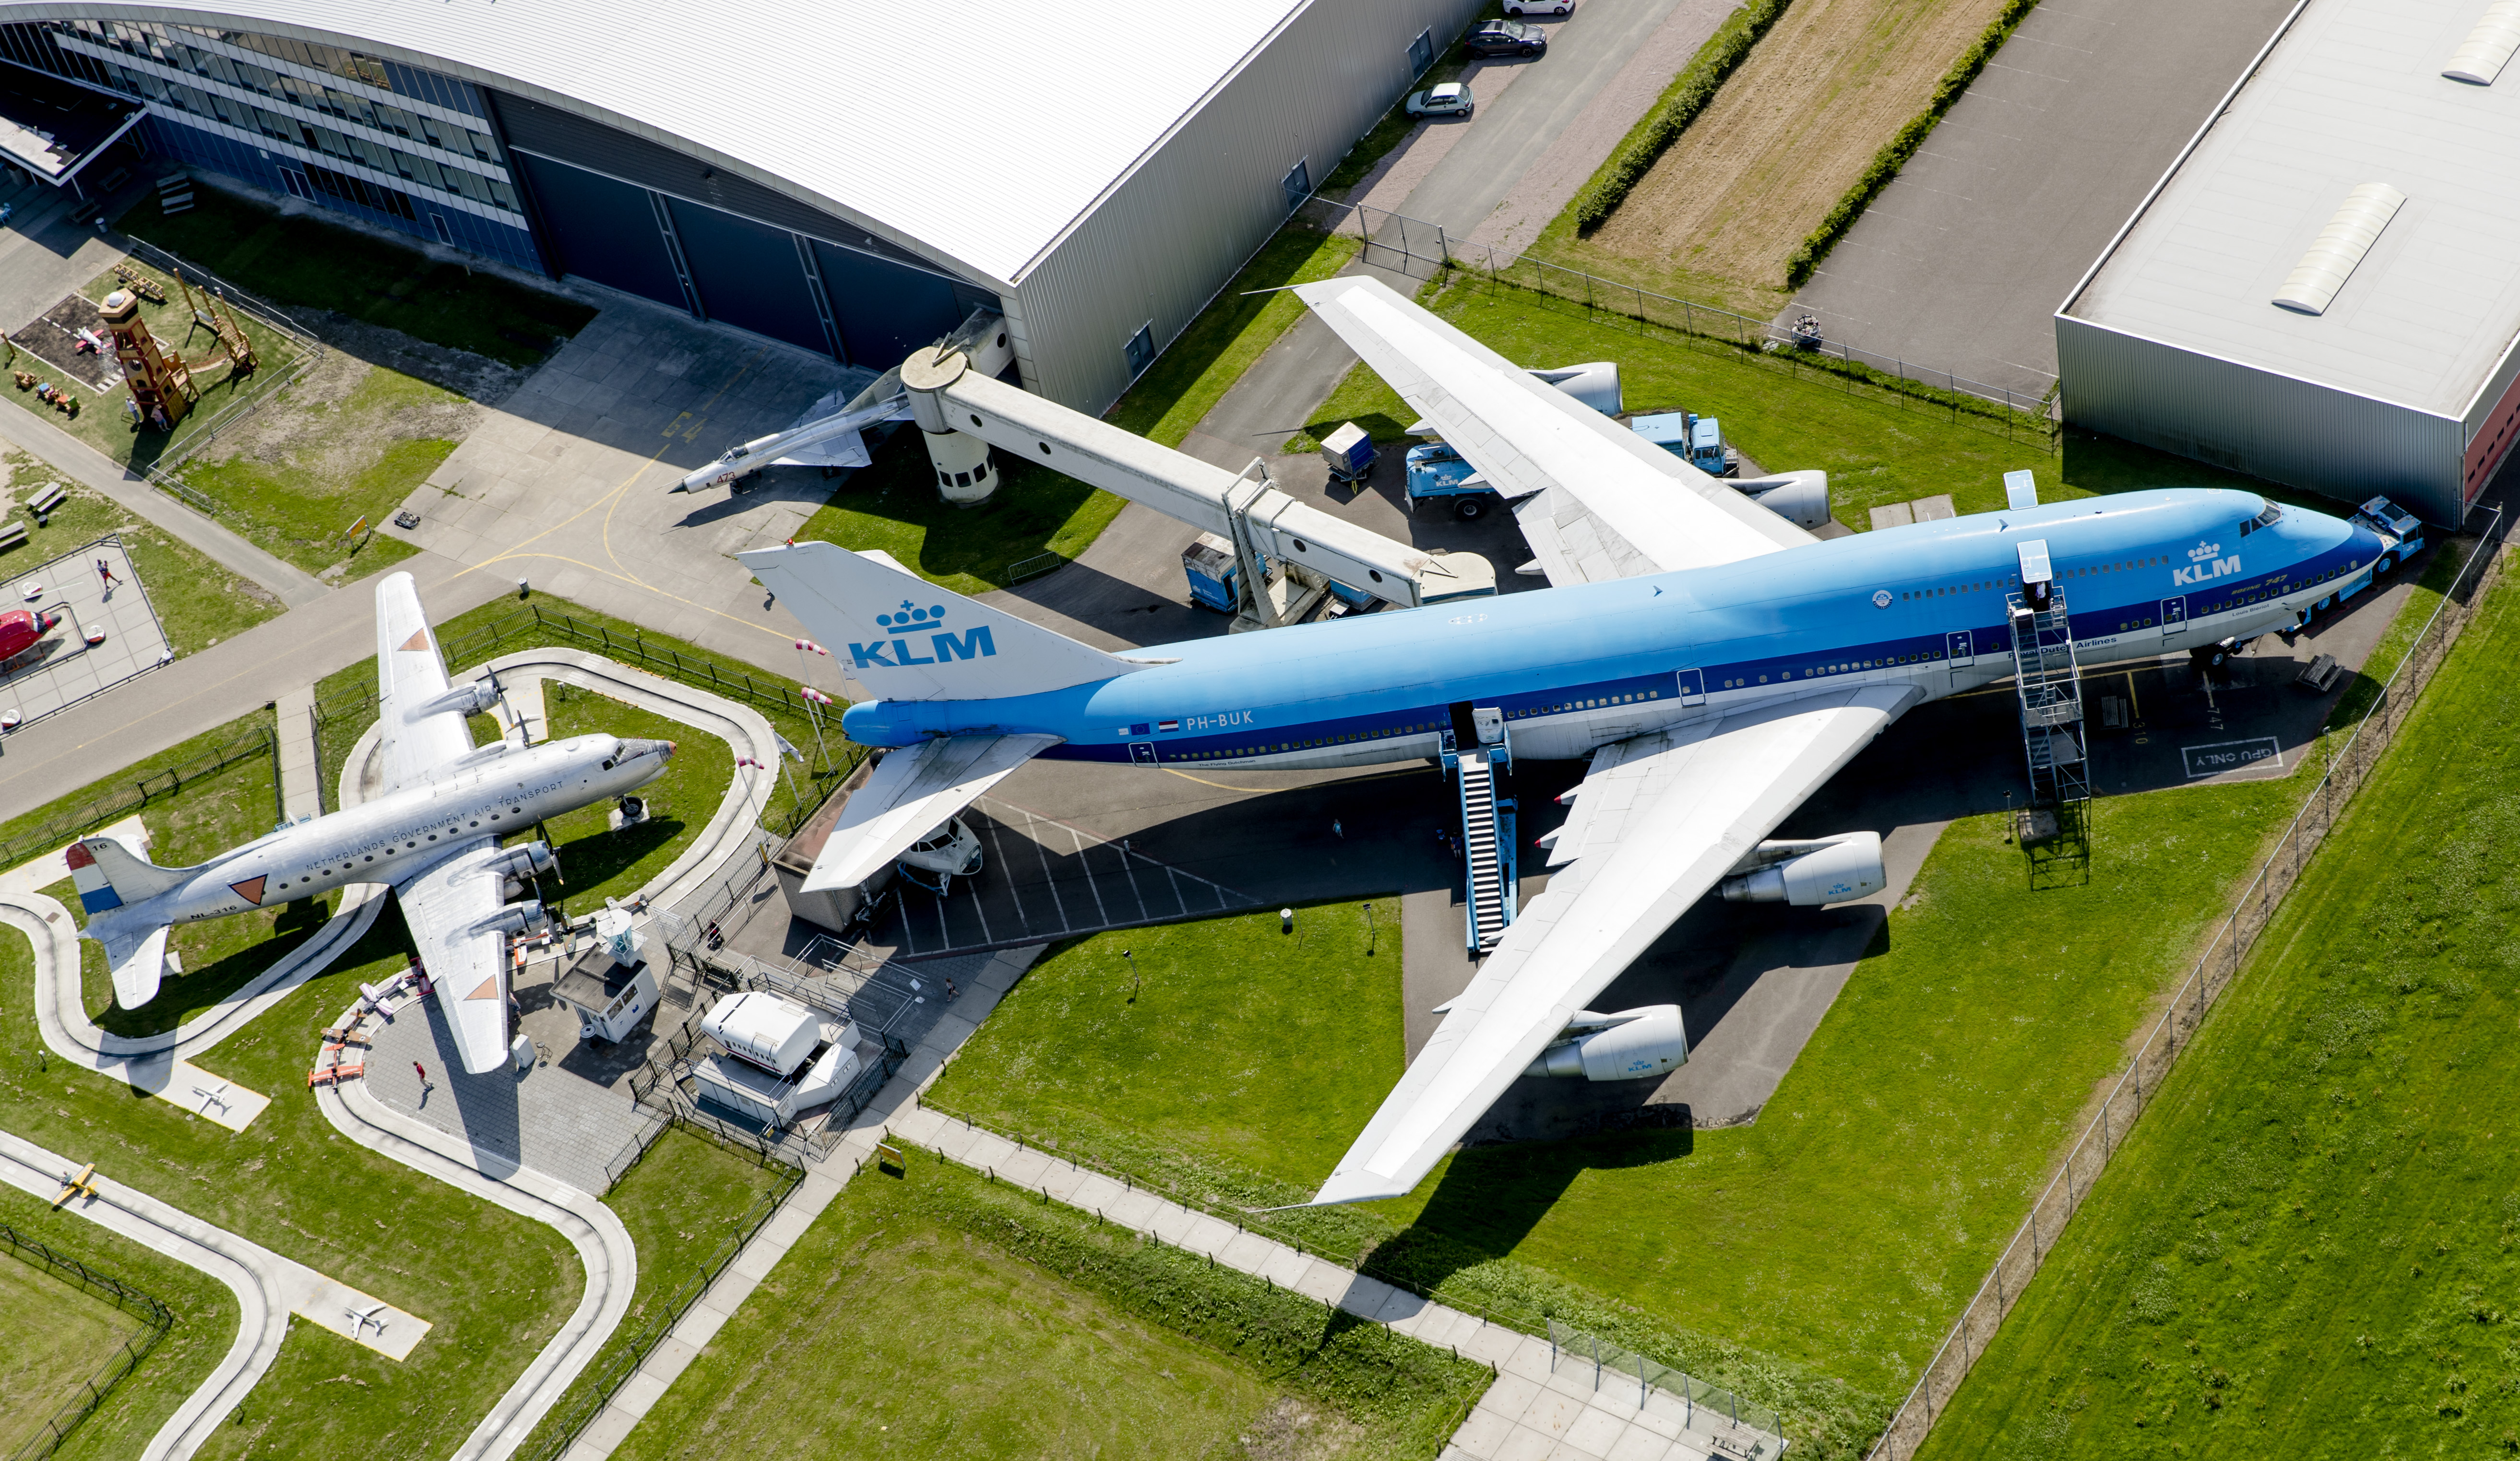 De uitbreiding van de luchthaven Lelystad Airport kan doorgaan. De Raad van State (RvS) heeft bezwaren tegen het bestemmingsplan van de gemeente Lelystad ongegrond verklaard. Dat maakte 's lands hoogste bestuursrechter woensdag bekend.